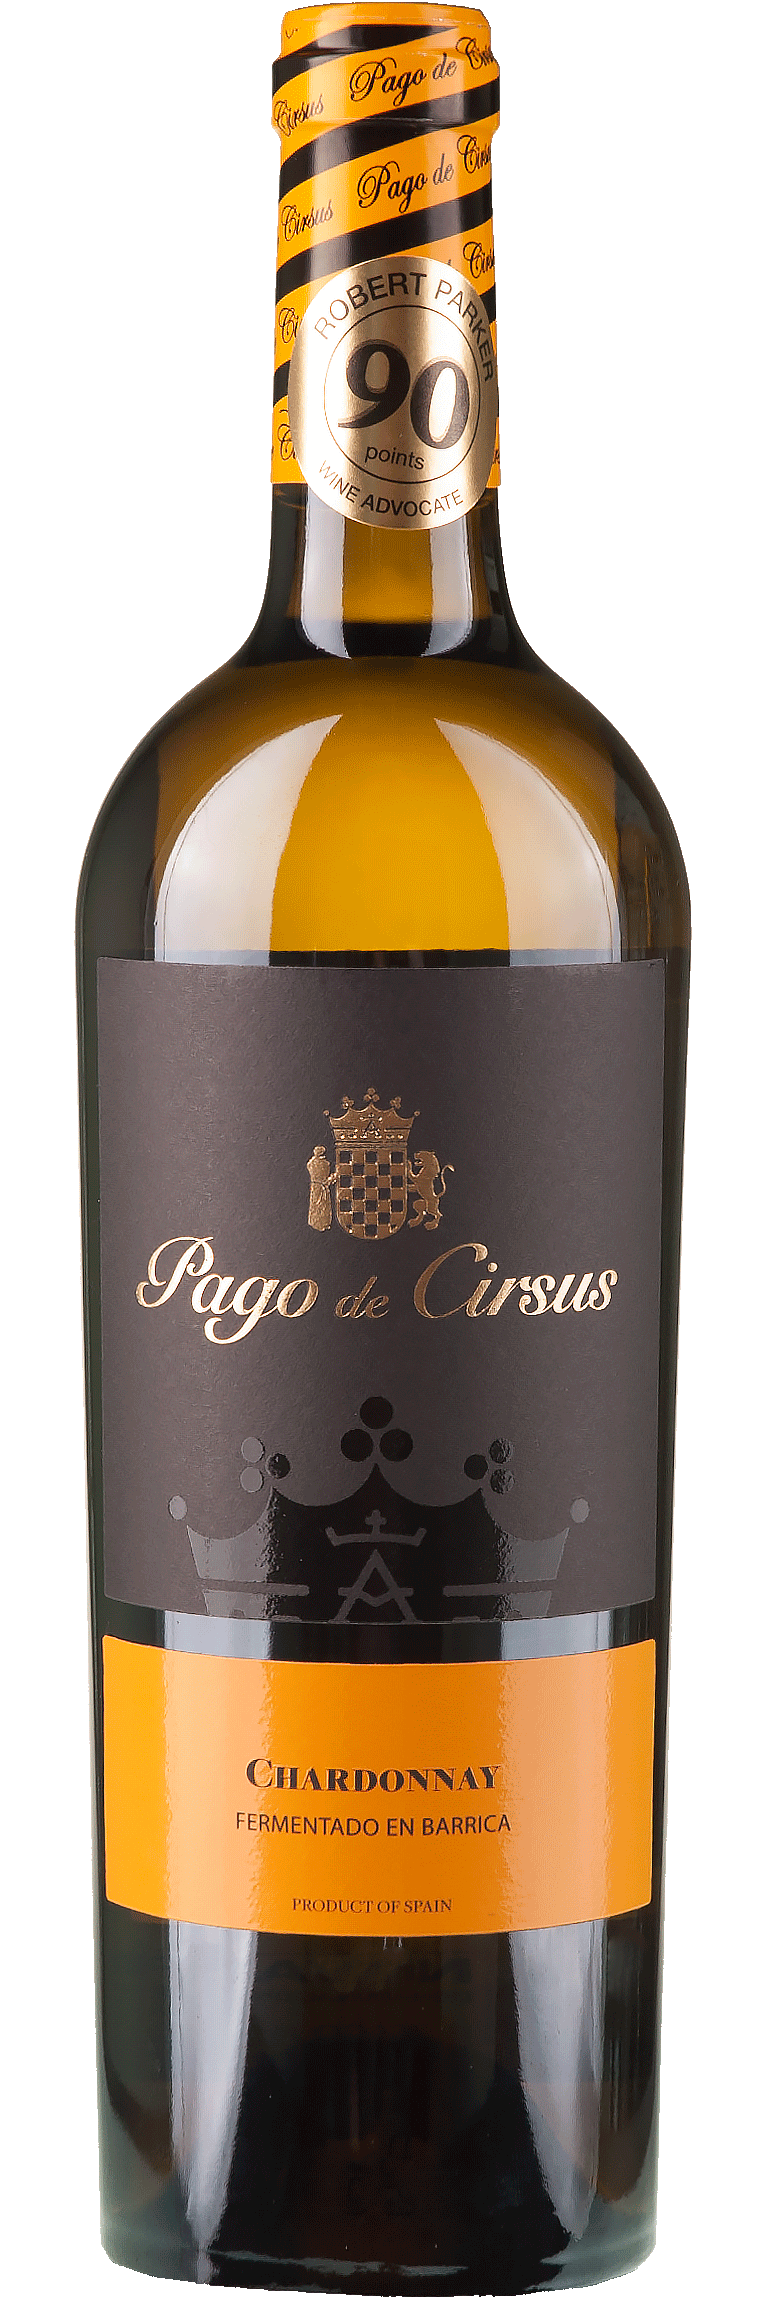 Chardonnay Barrelfermented - Pago de Cirsus - Spanien - Weißwein trocken - 0,75l - 14,5% vol.